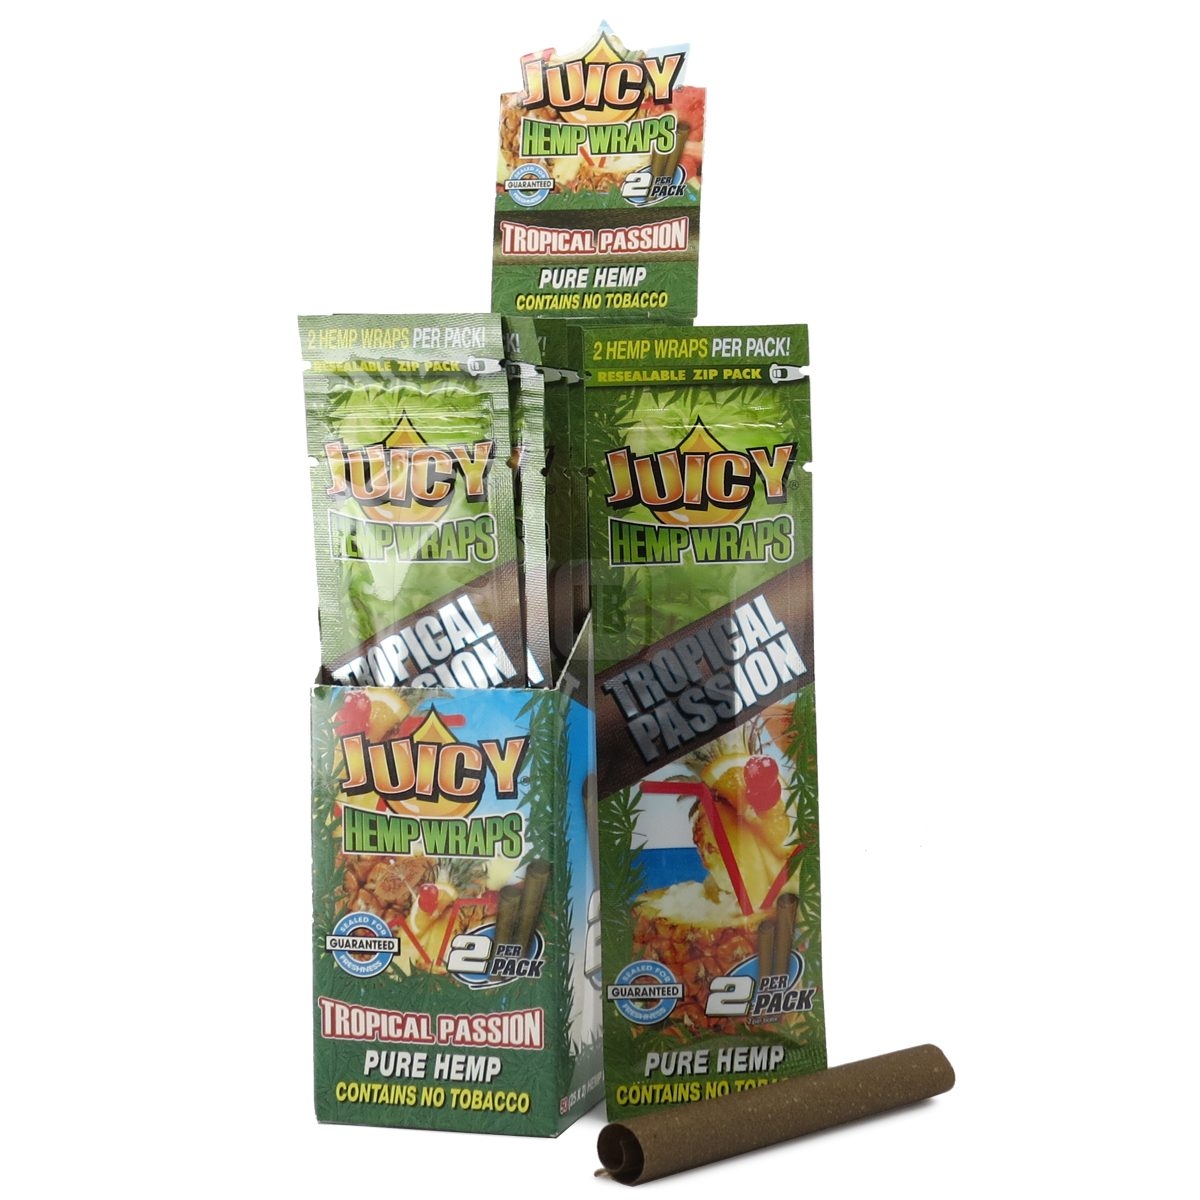 Juicy Jay Hemp Wraps 1 Pack Mango Papaya